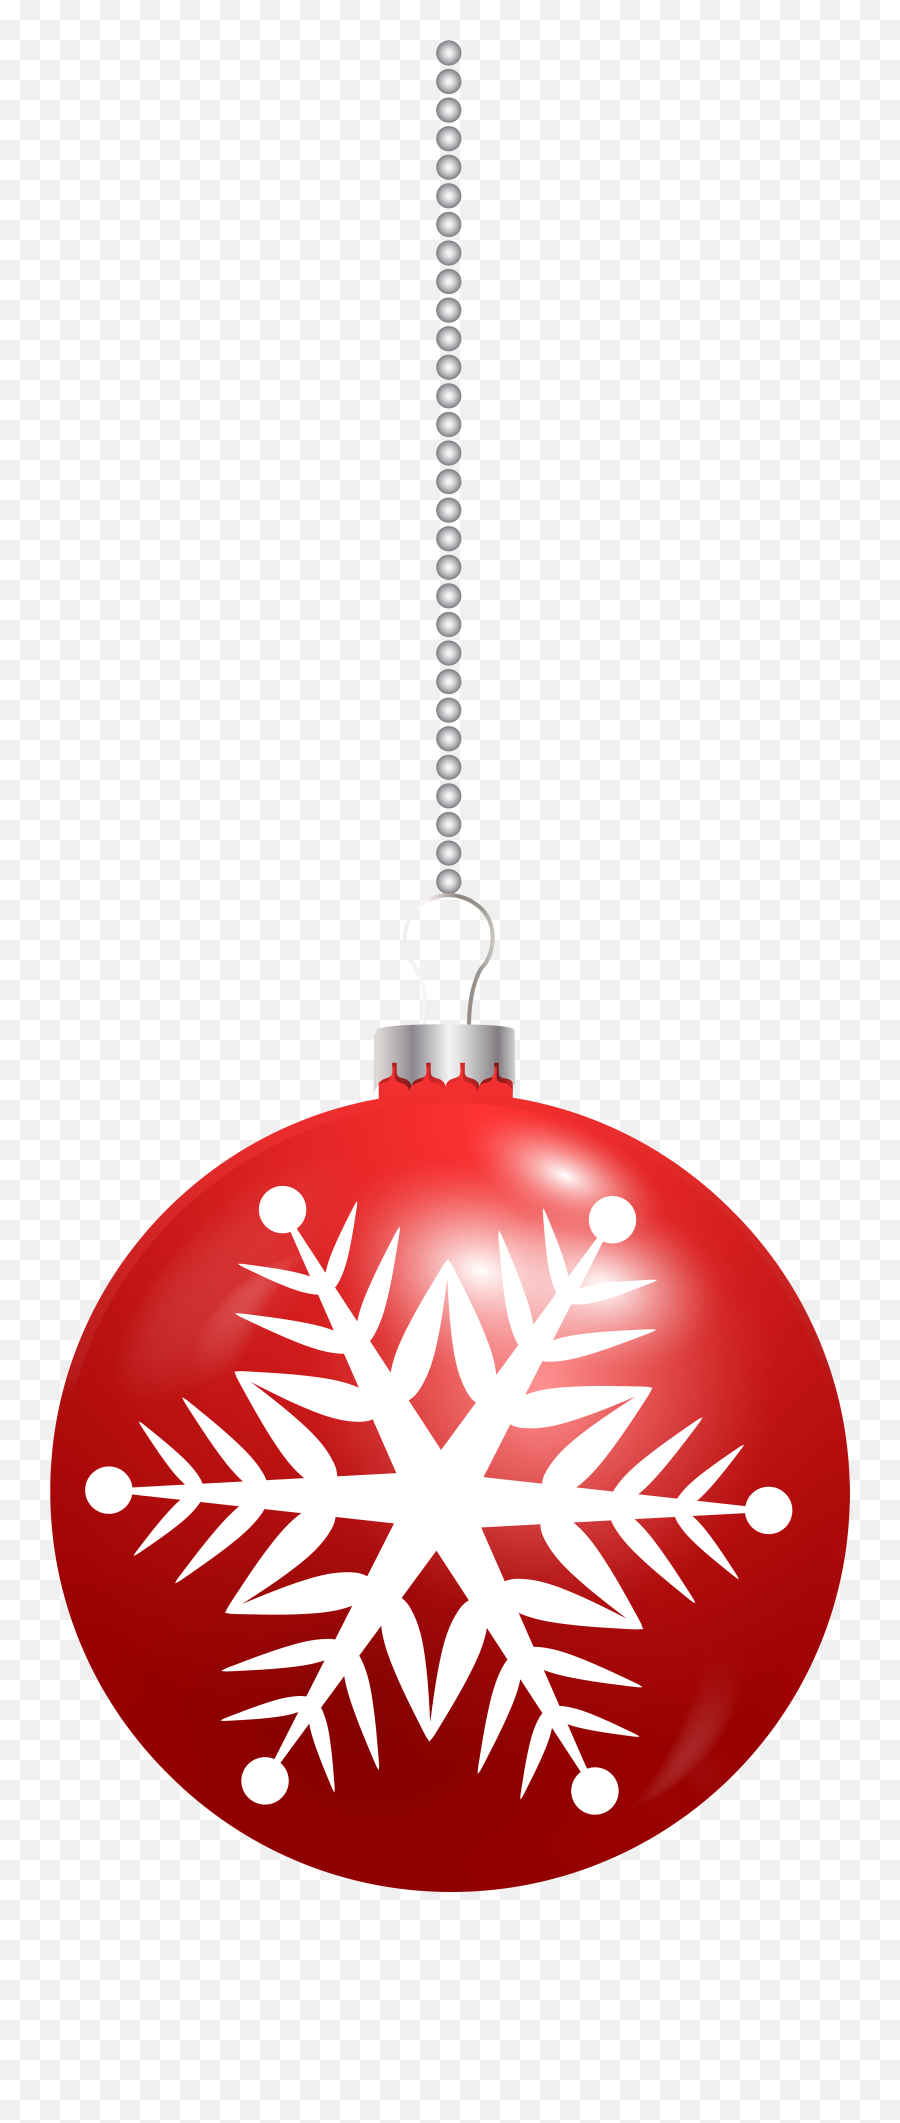 Red Snowflake Png Files - Christmas Ball Ornament Clip Art Red,Christmas Snowflakes Png